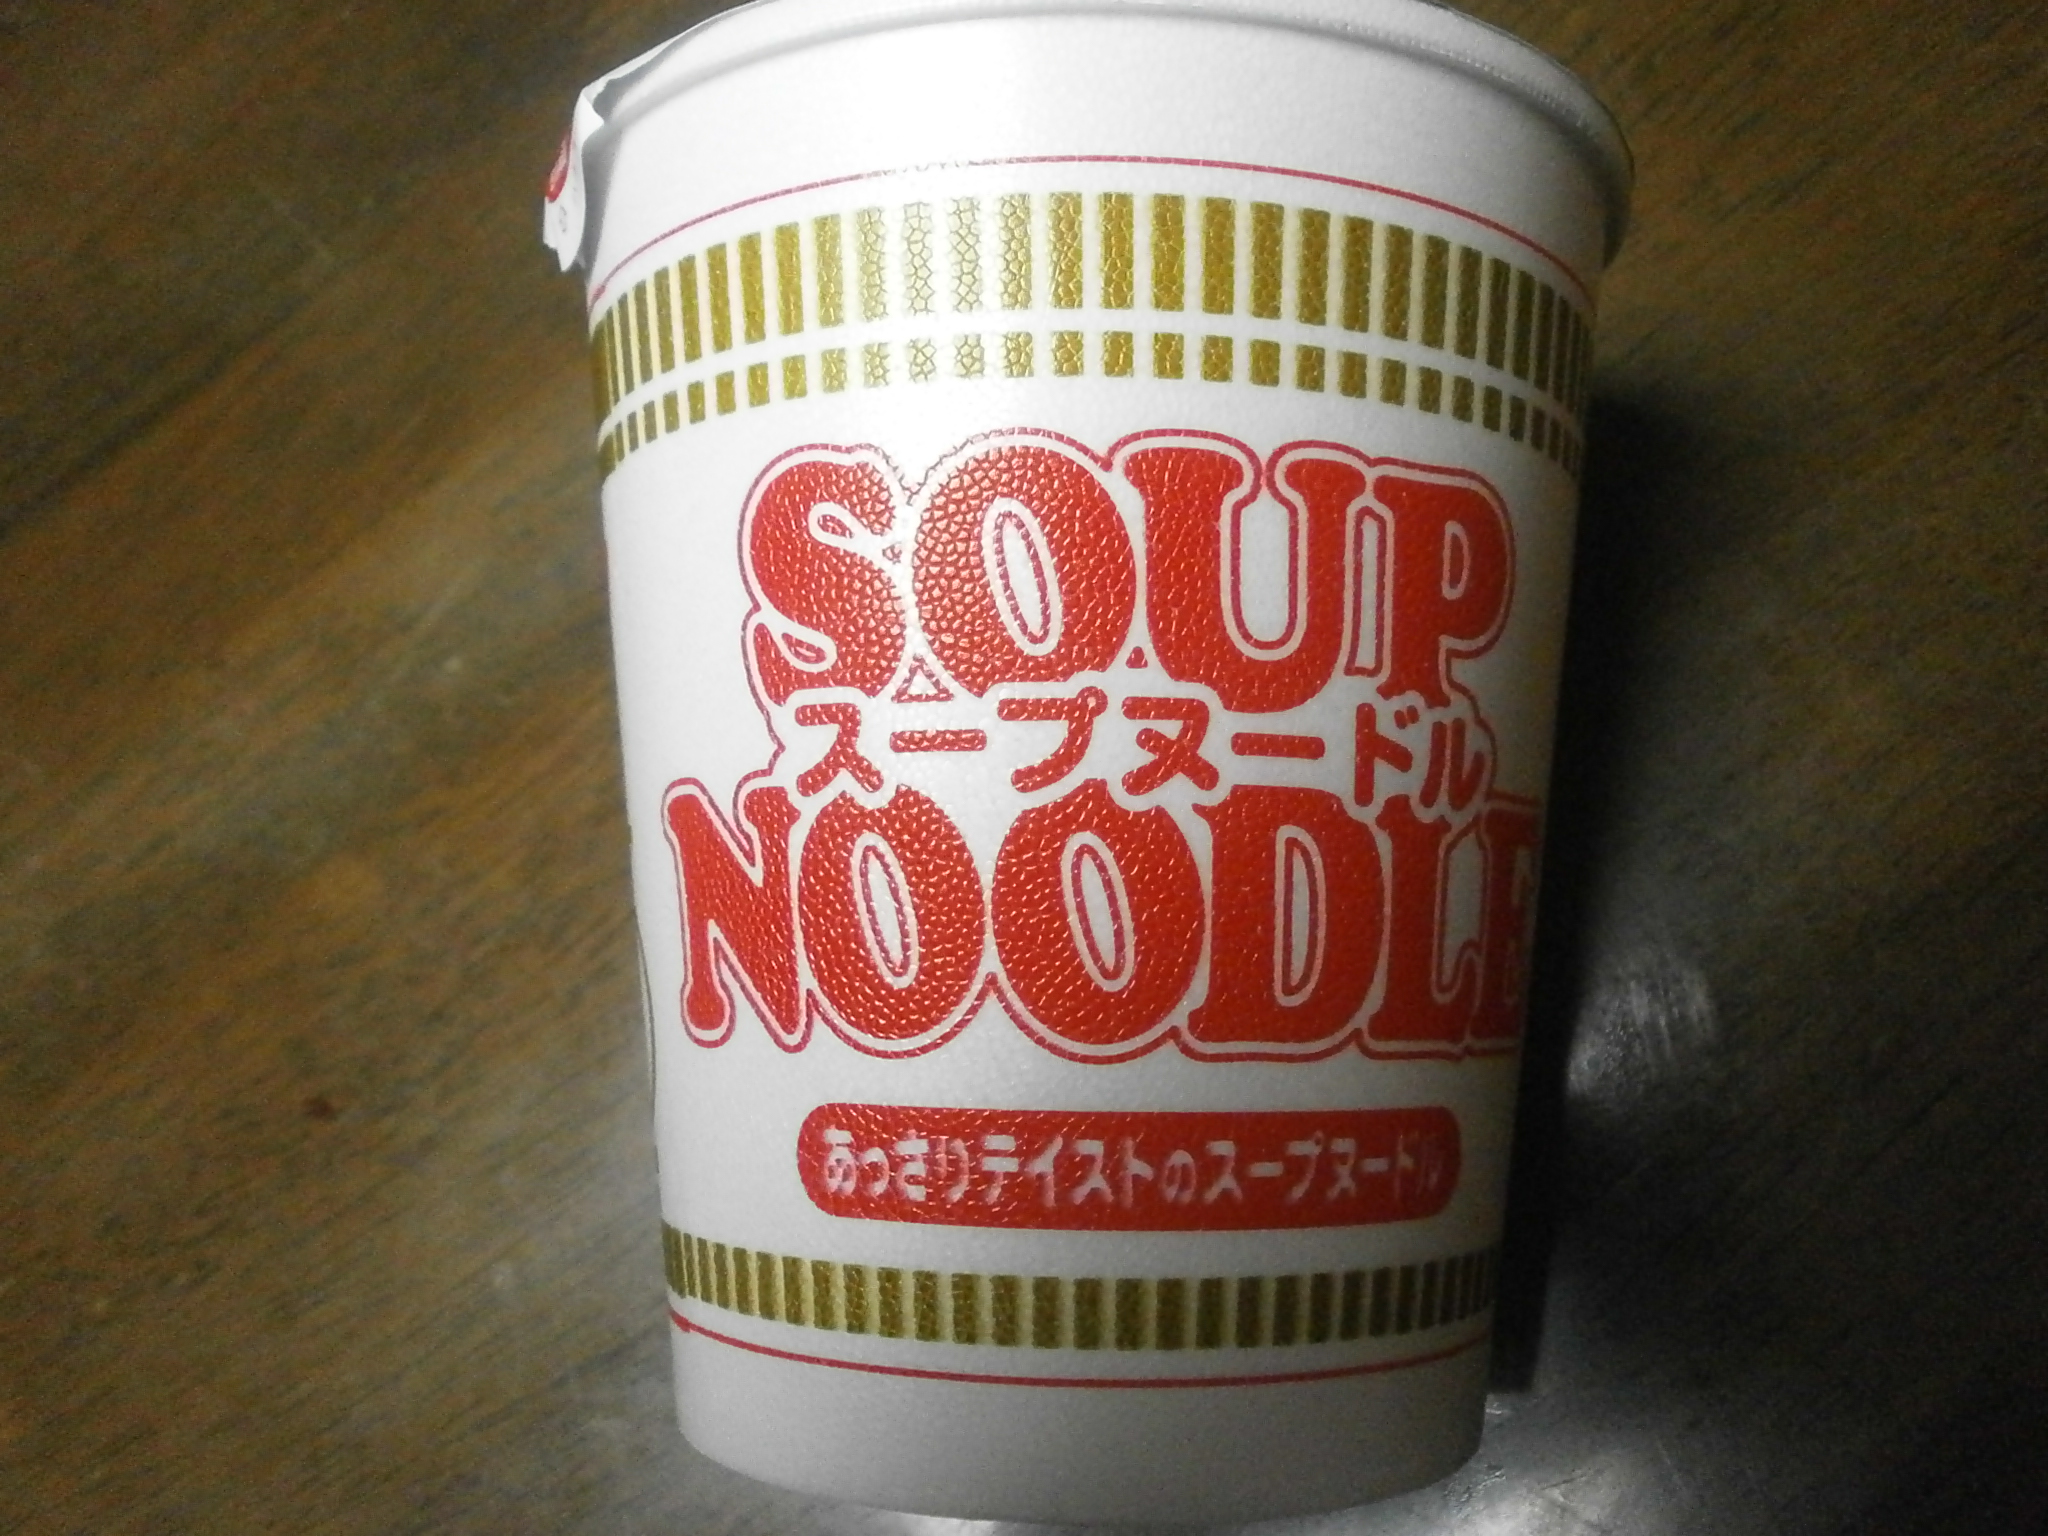 Which high-calorie? Noodle soup? Kitsune udon?